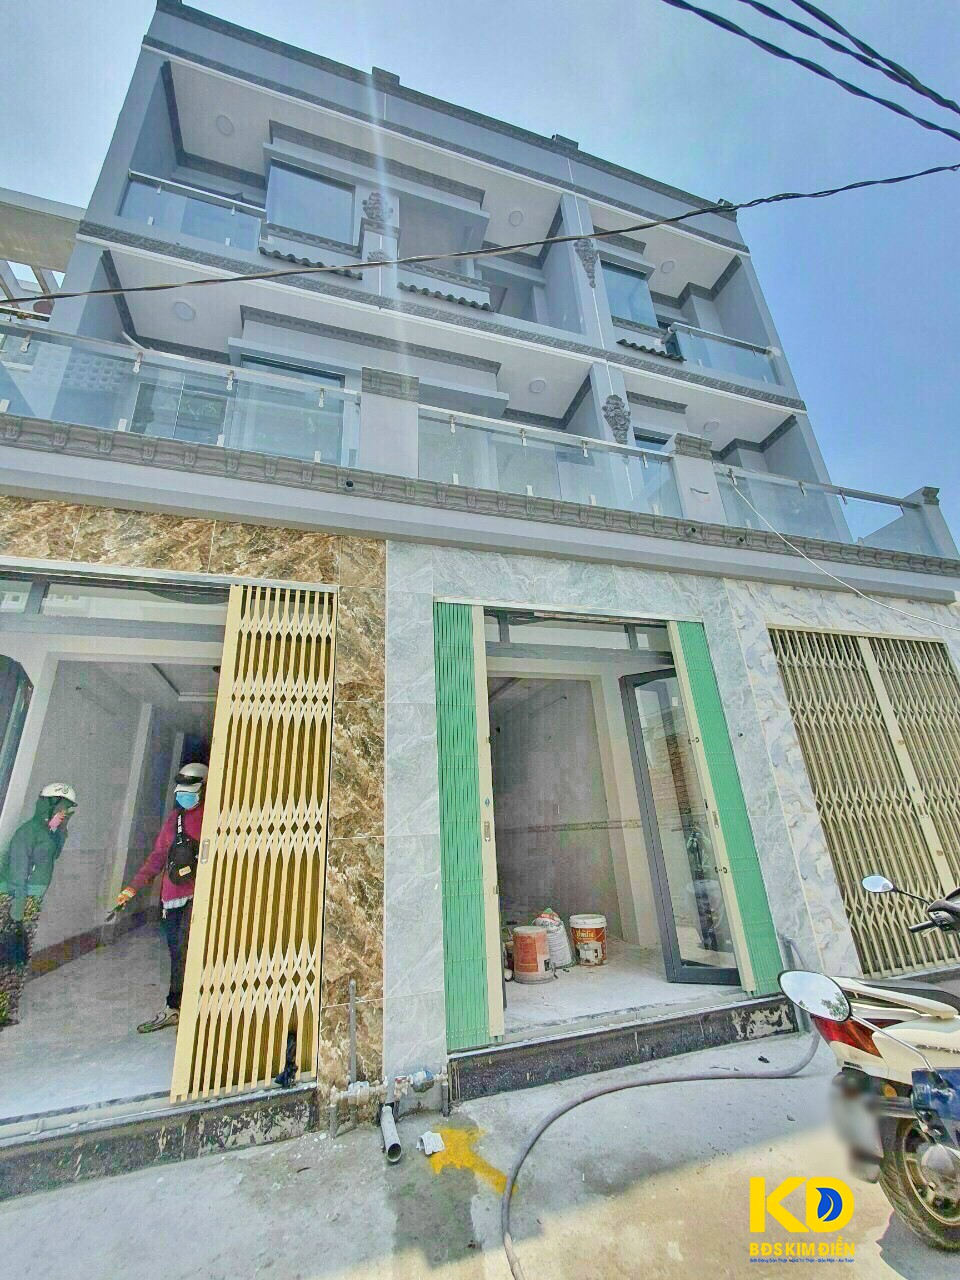 Bán nhà mới 100% đang hoàn thiện SHR đồng sở hữu 3 căn (Còn căn số 2) hẻm 2581 Huỳnh Tấn Phát Nhà Bè.